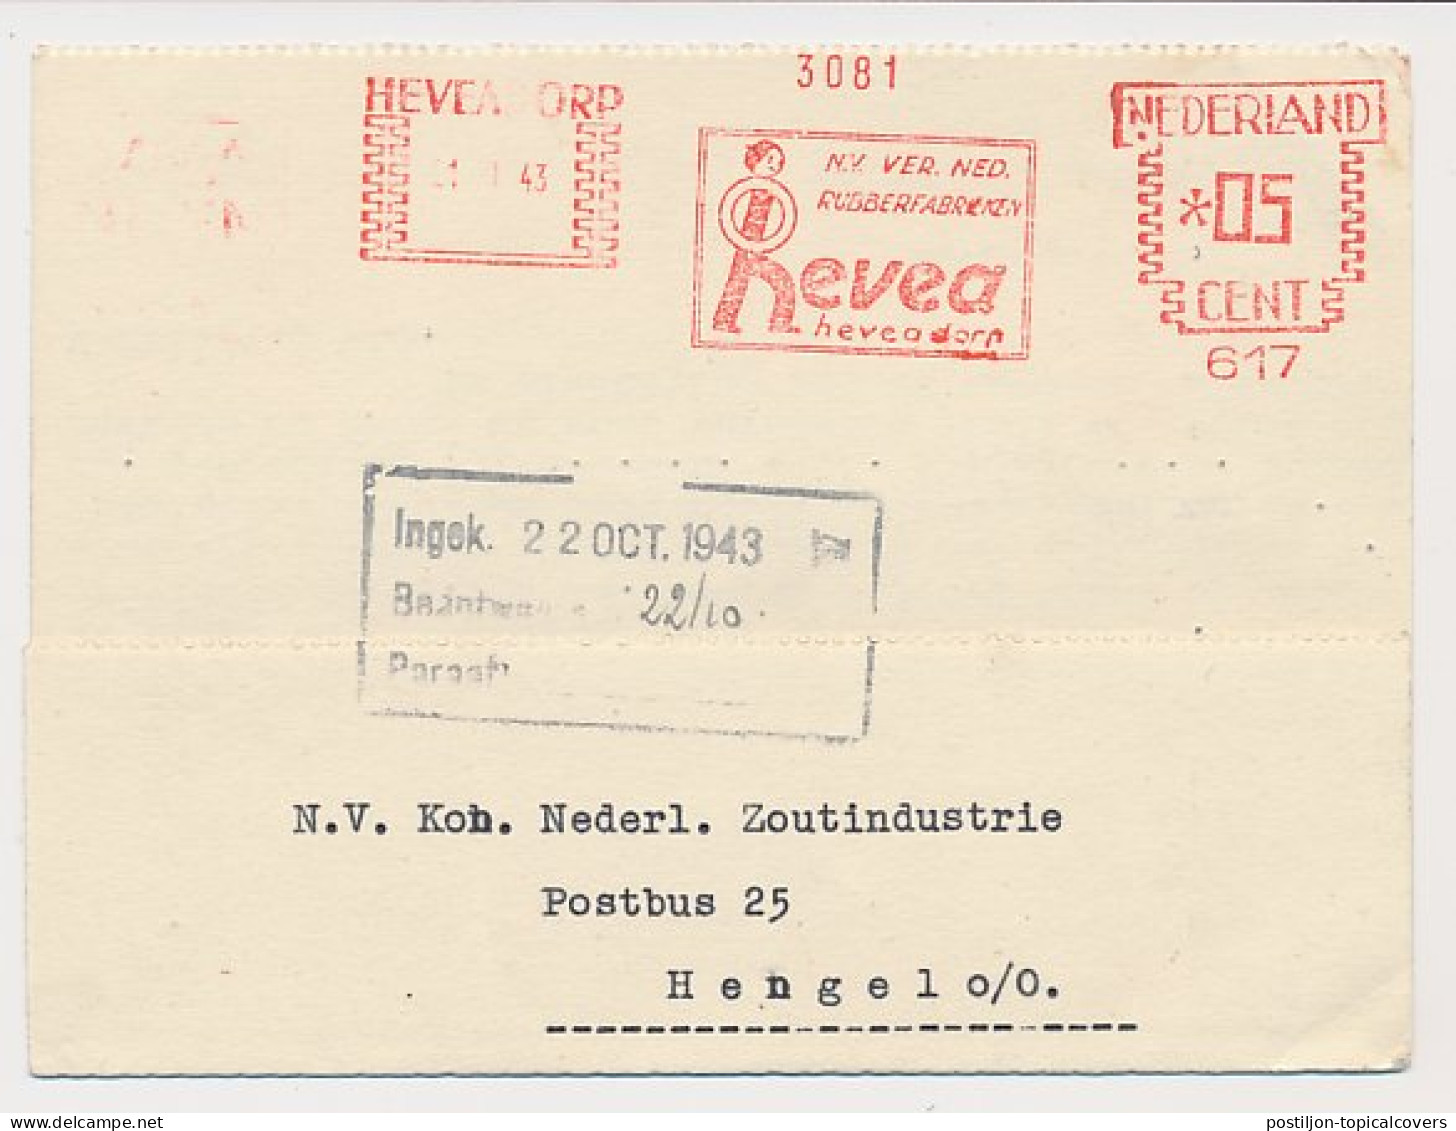 Meter Card Netherlands 1943 Rubber Factory - Heveadorp - Bäume